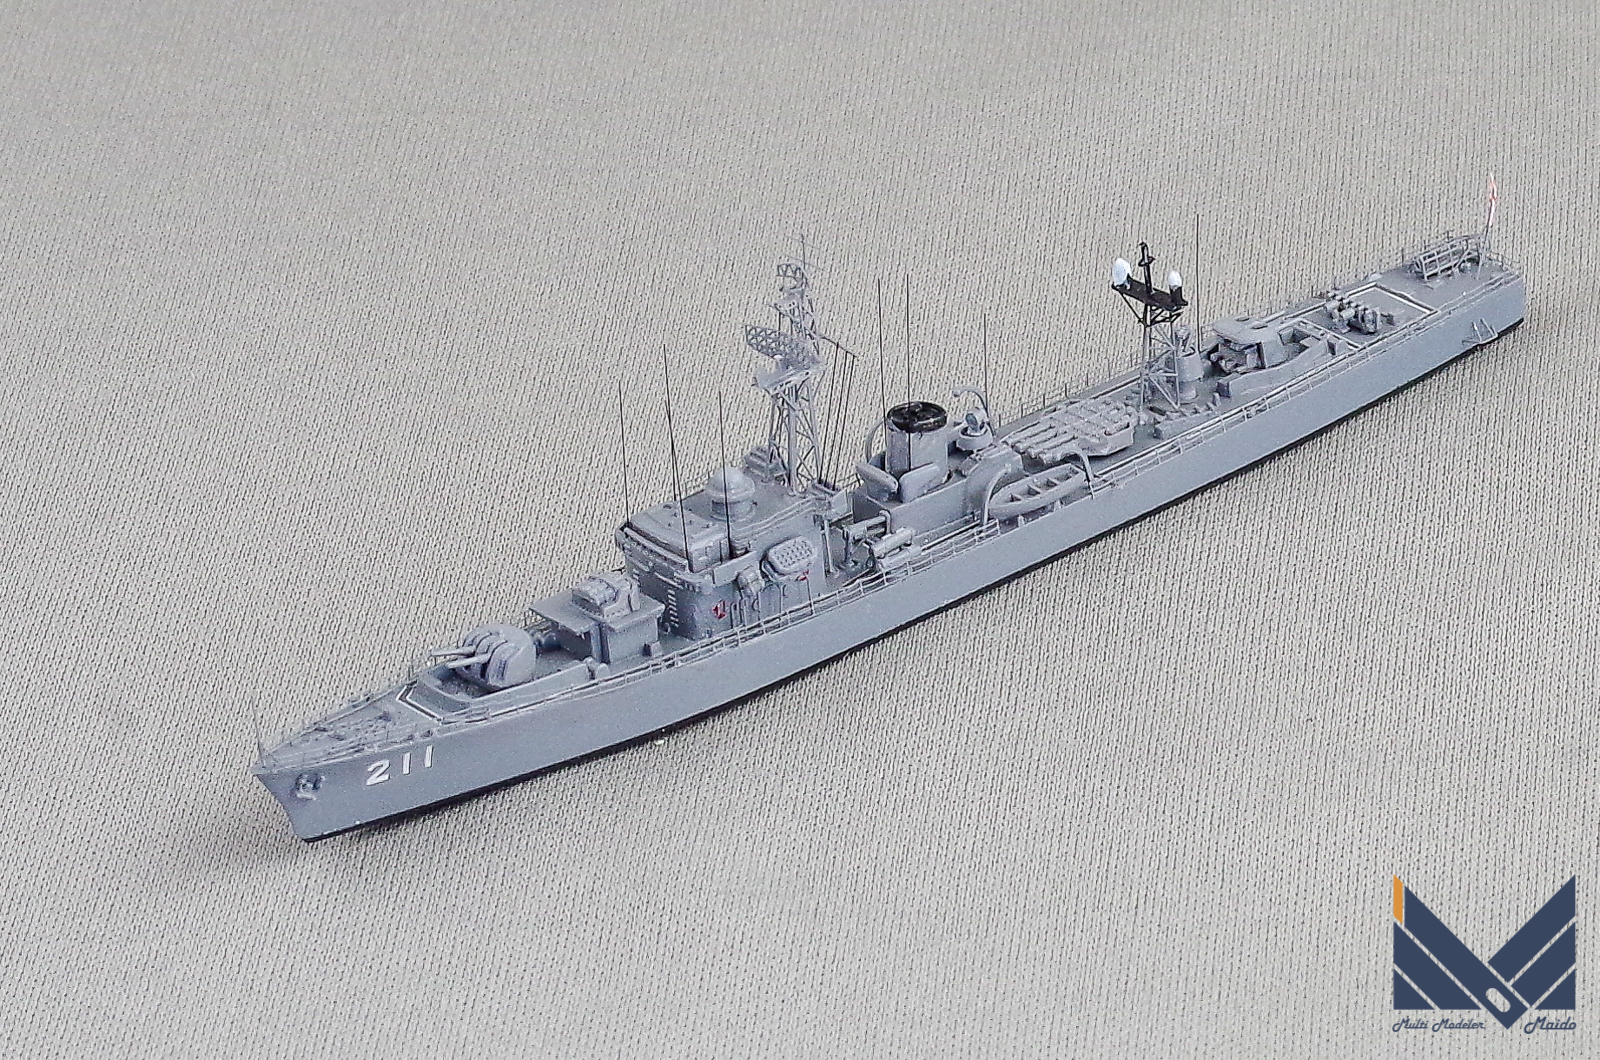 ピットロード 1/700 海上自衛隊護衛艦「いすず」完成品 JMSDF Isuzu